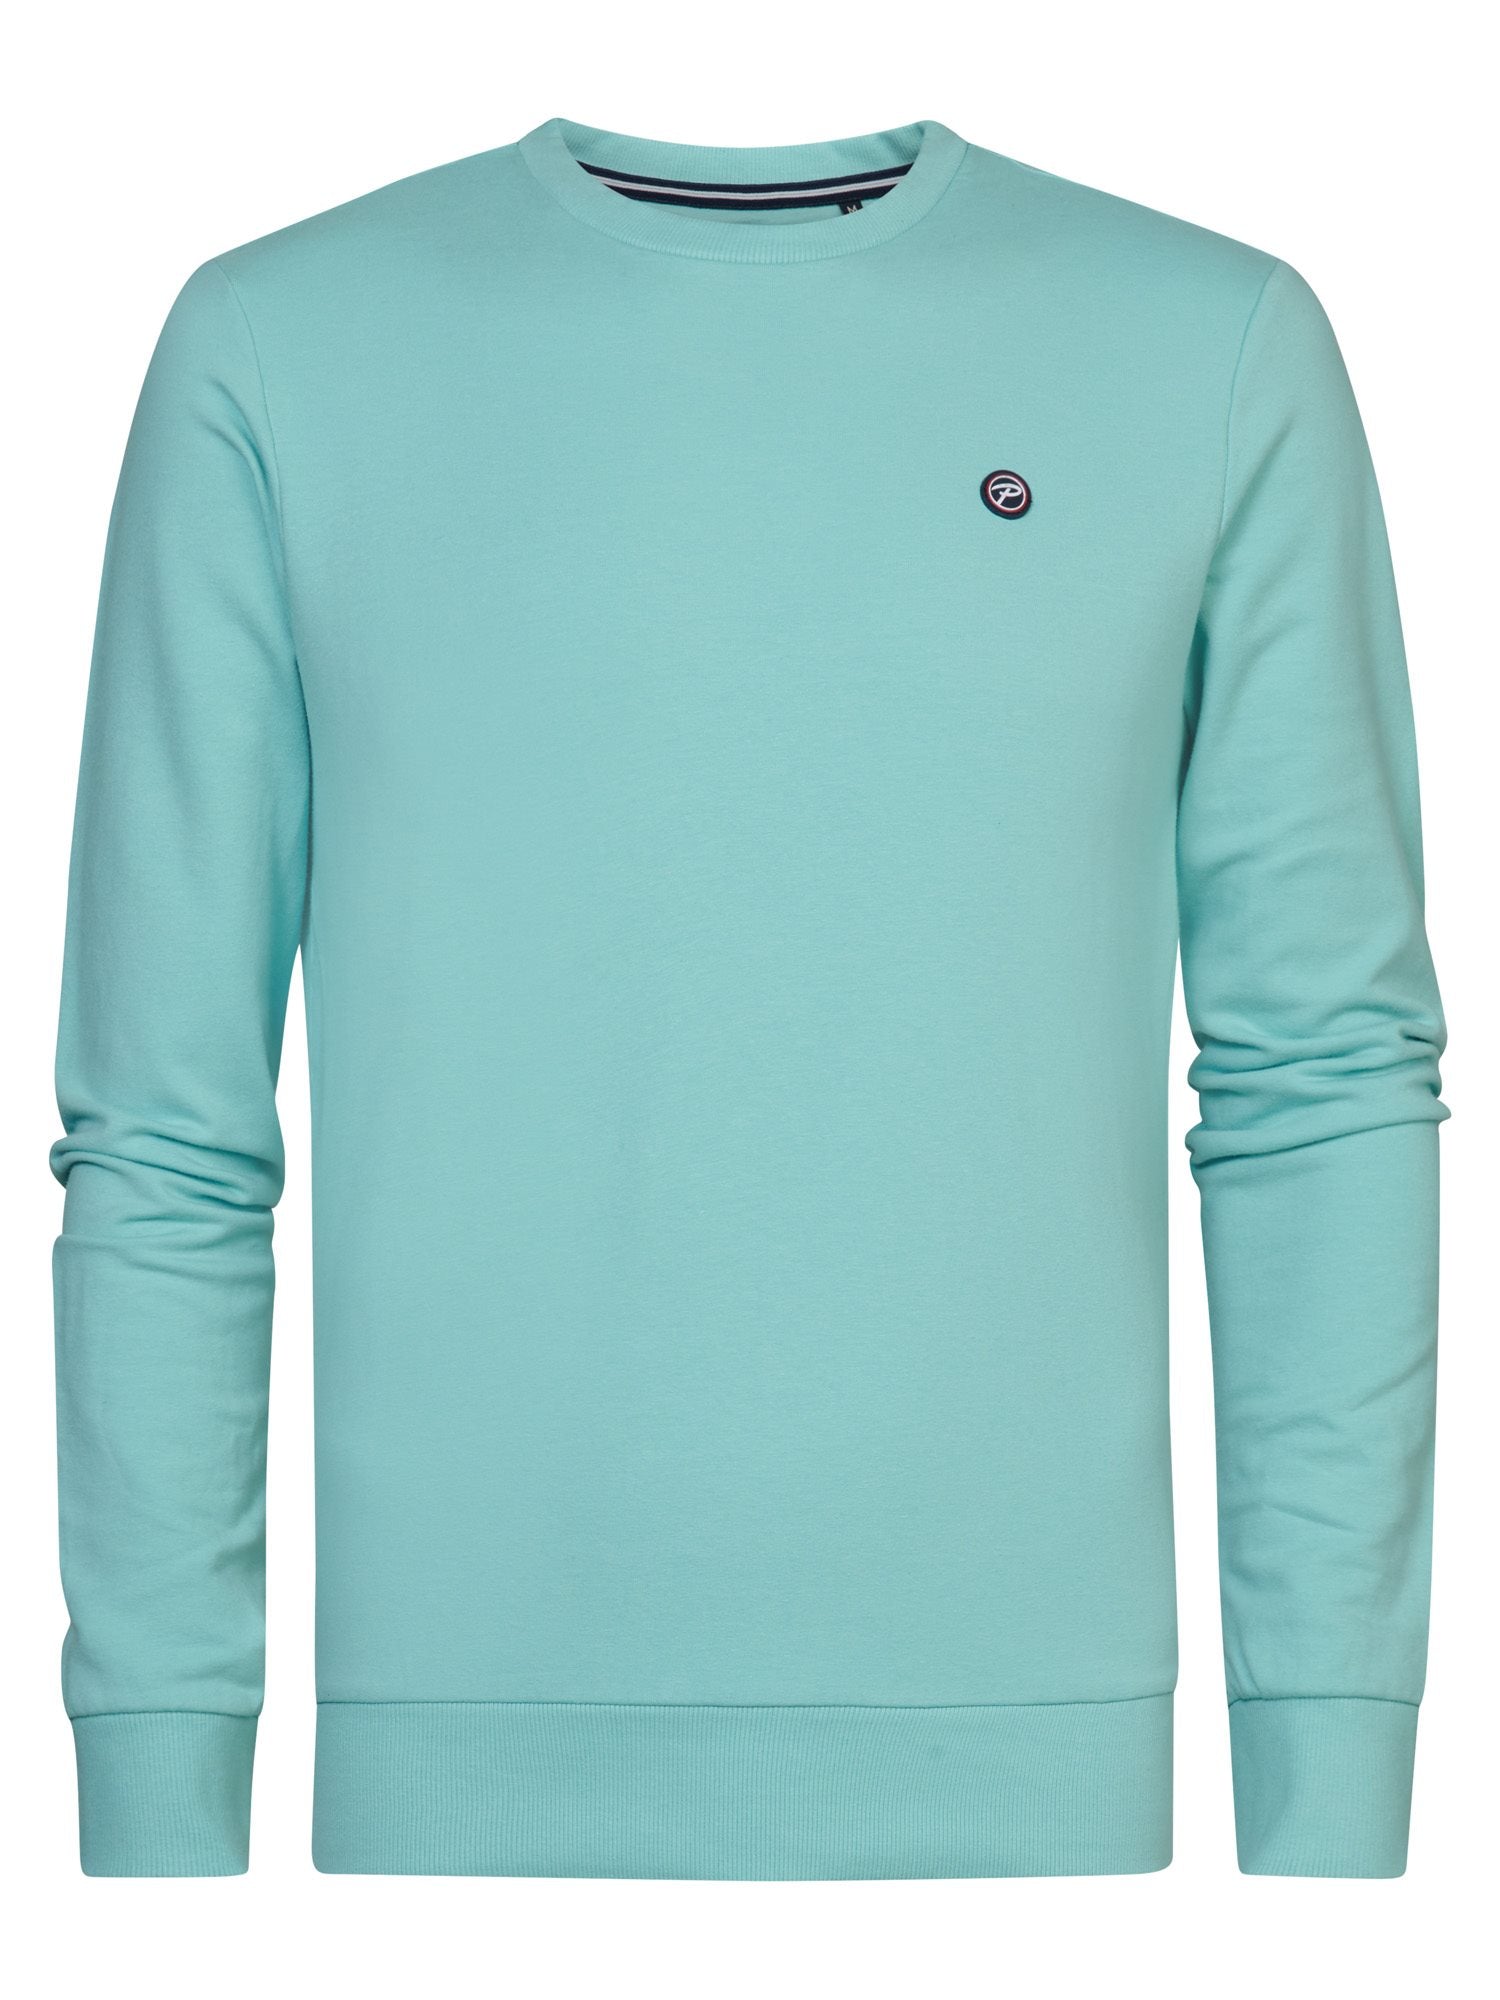 Sweater 14839 Aqua